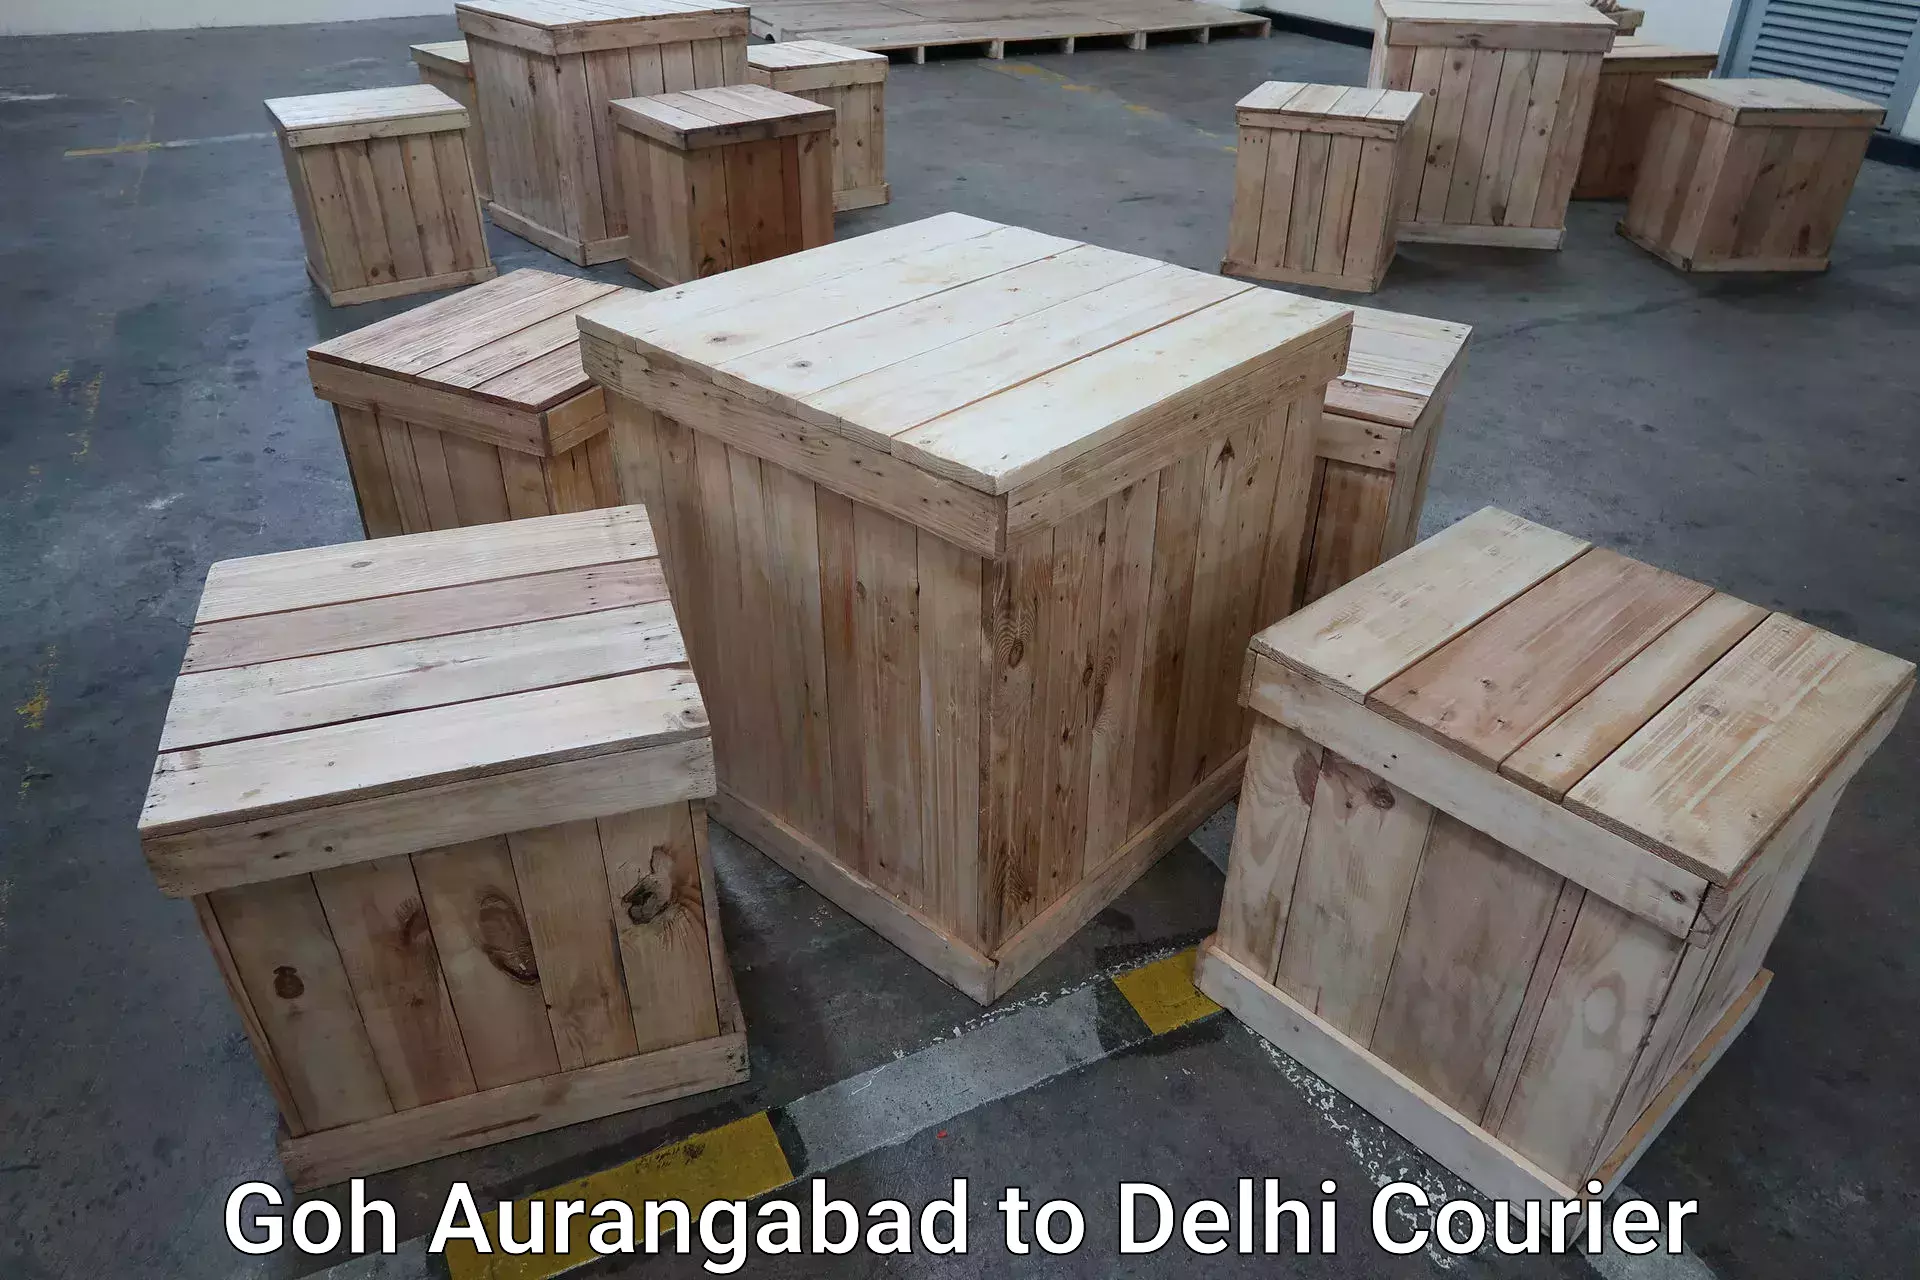 Luggage shipment tracking Goh Aurangabad to Jawaharlal Nehru University New Delhi